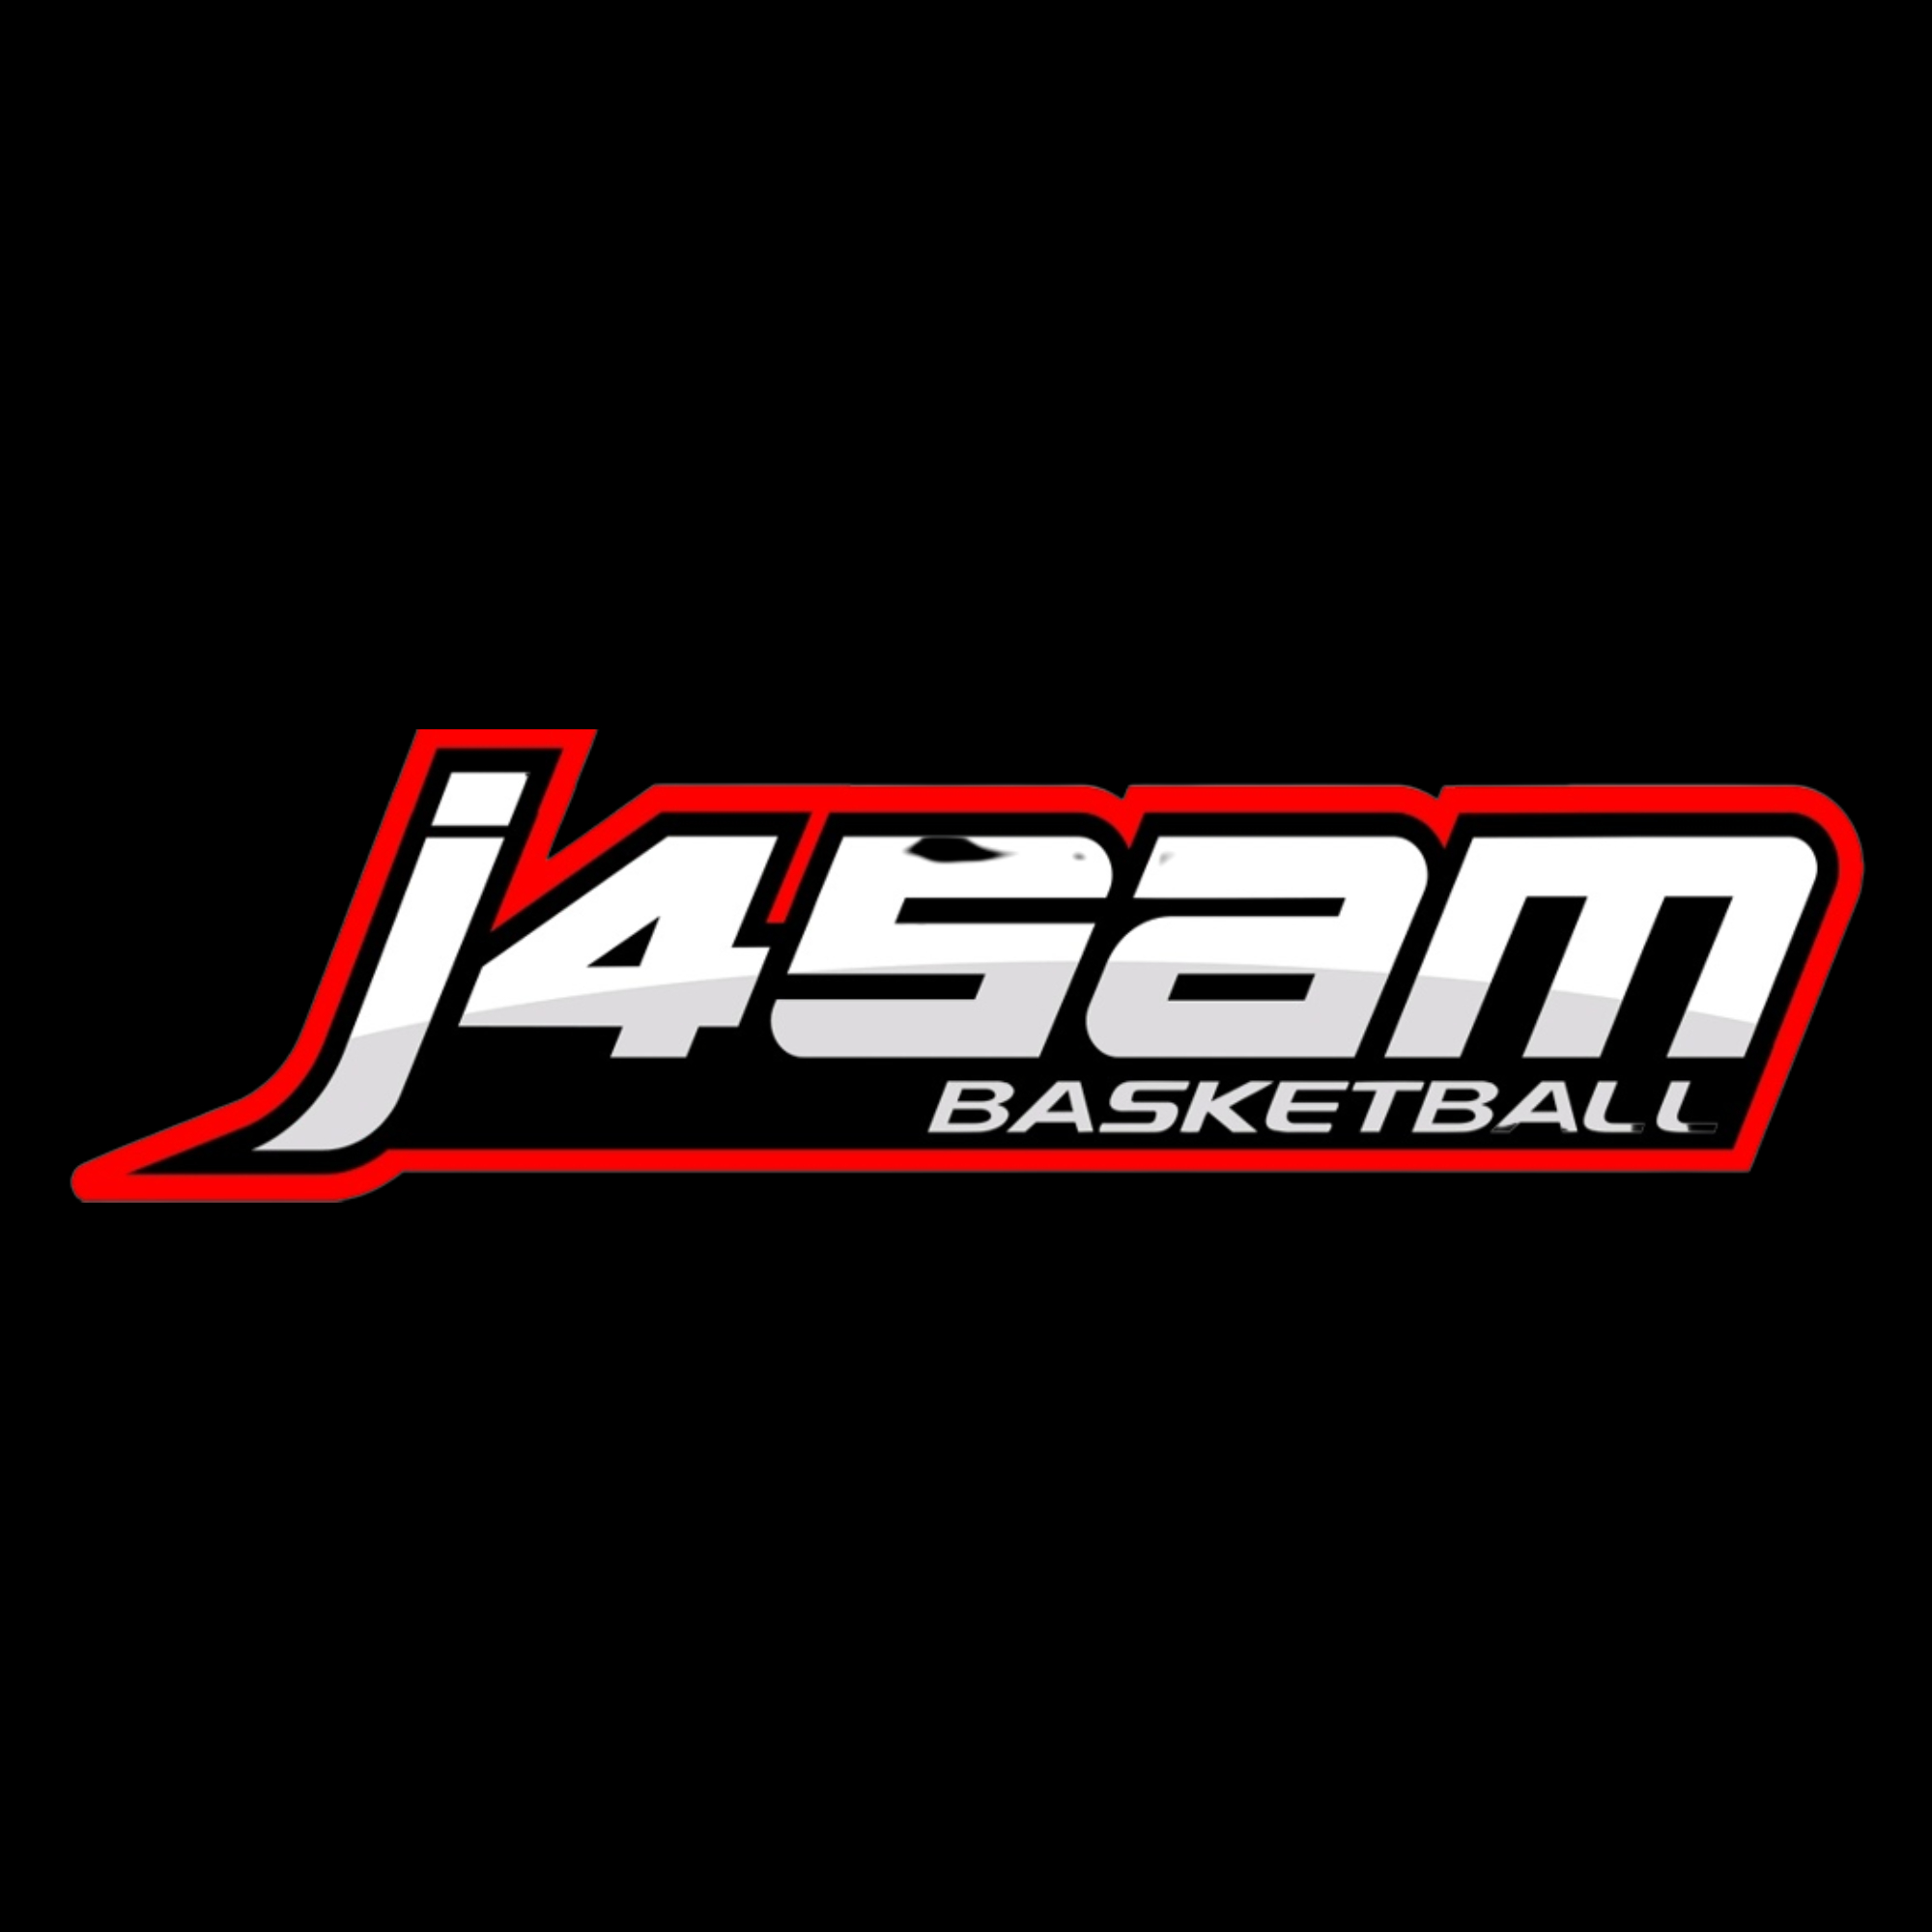 The official logo of J4SAM